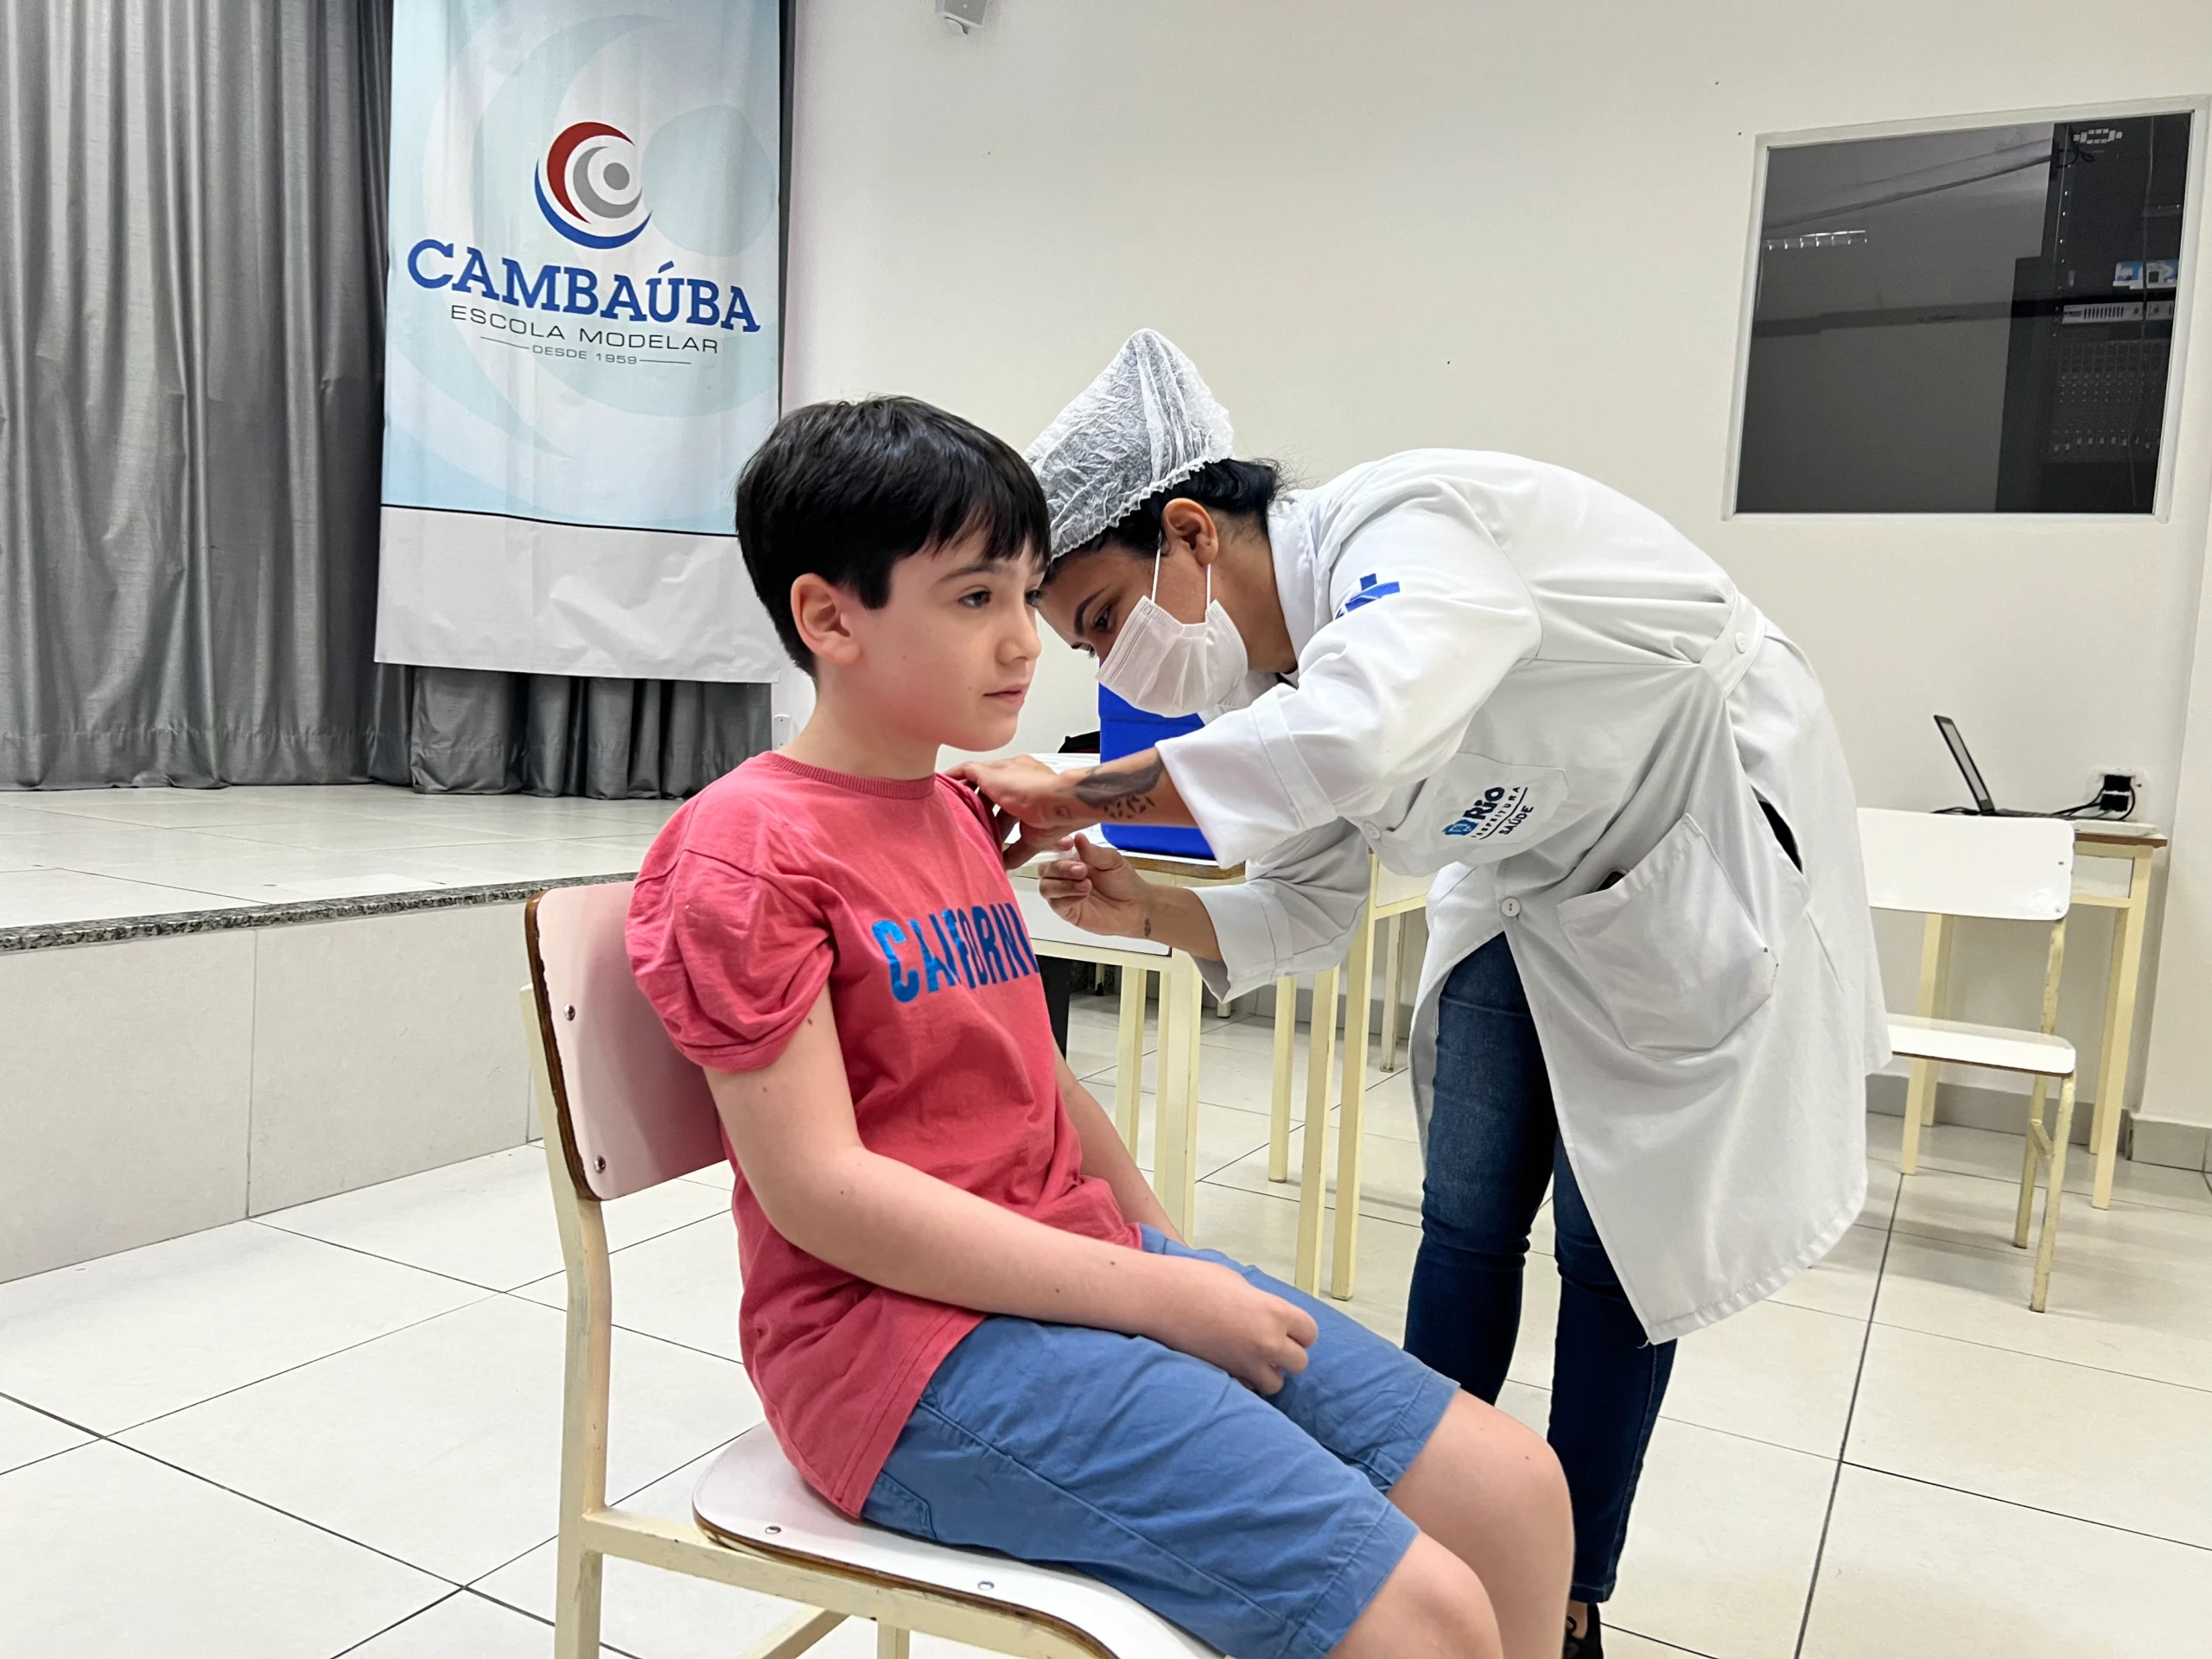 Saúde em Foco: Cambaúba promove vacinação para garantir bem-estar na comunidade escolar